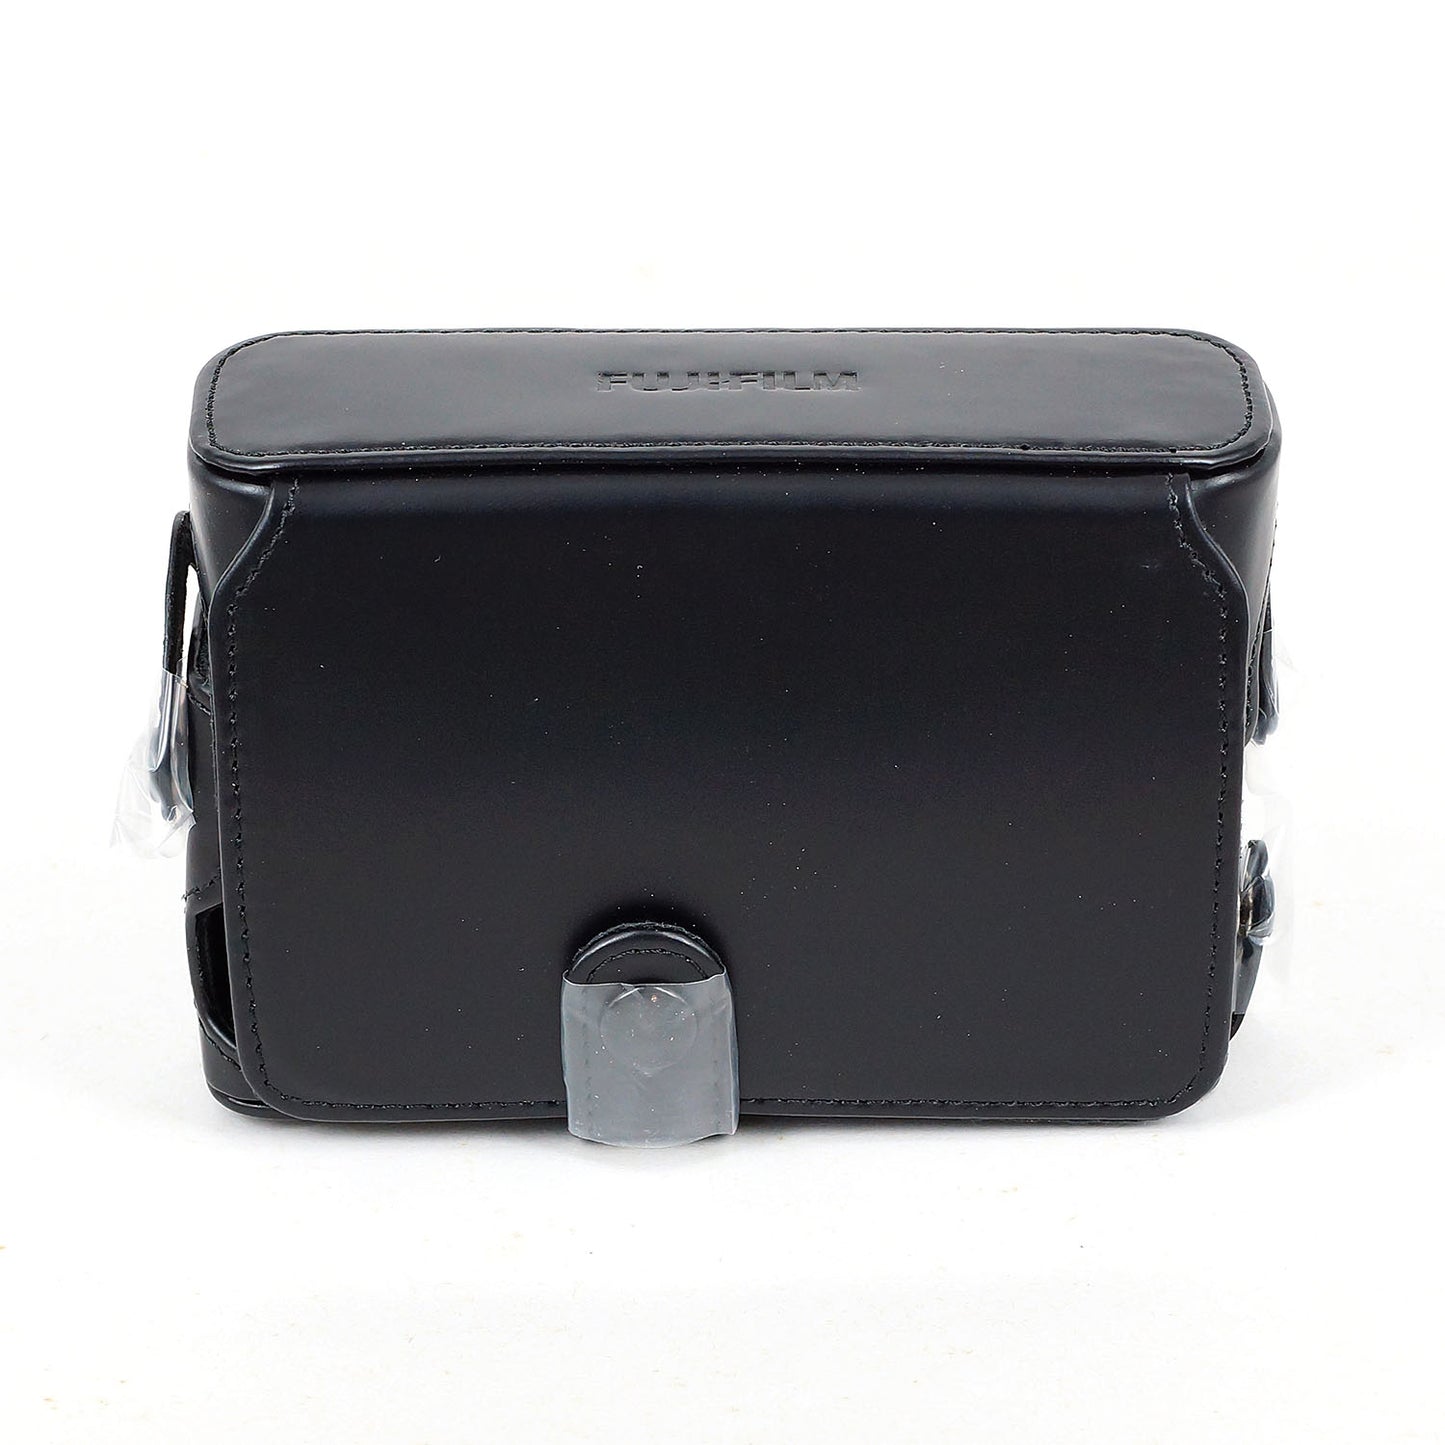 Genuine Quickshot Leather Case LC-X100V for Fujifilm X100V X100VI